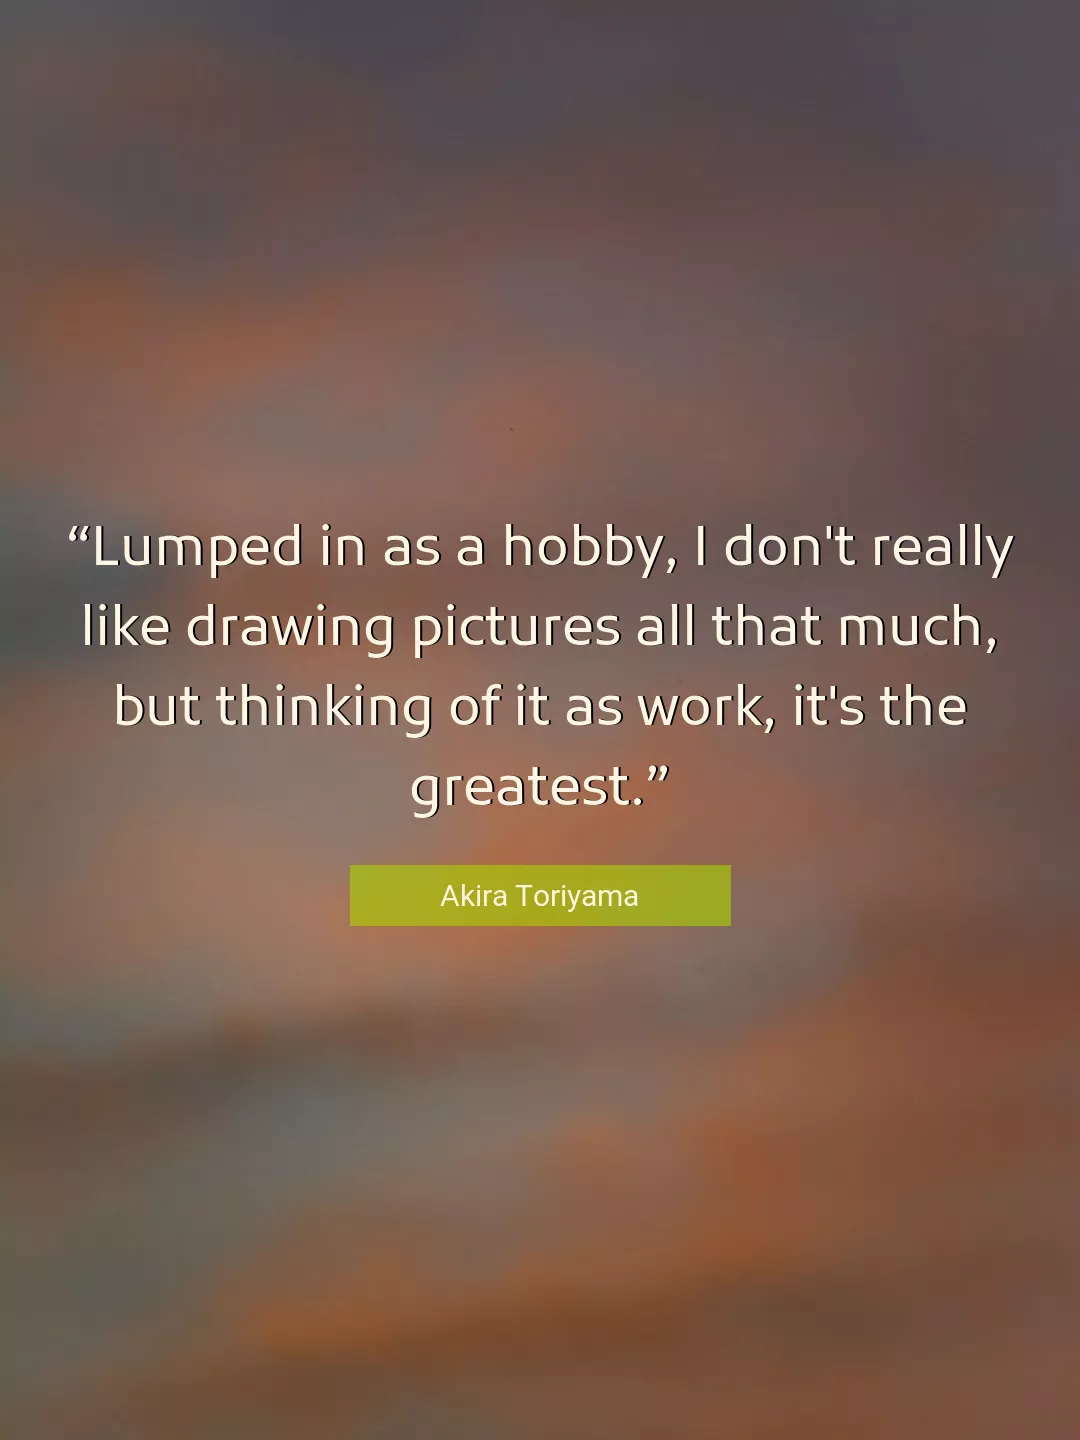 Quote About Work By Akira Toriyama